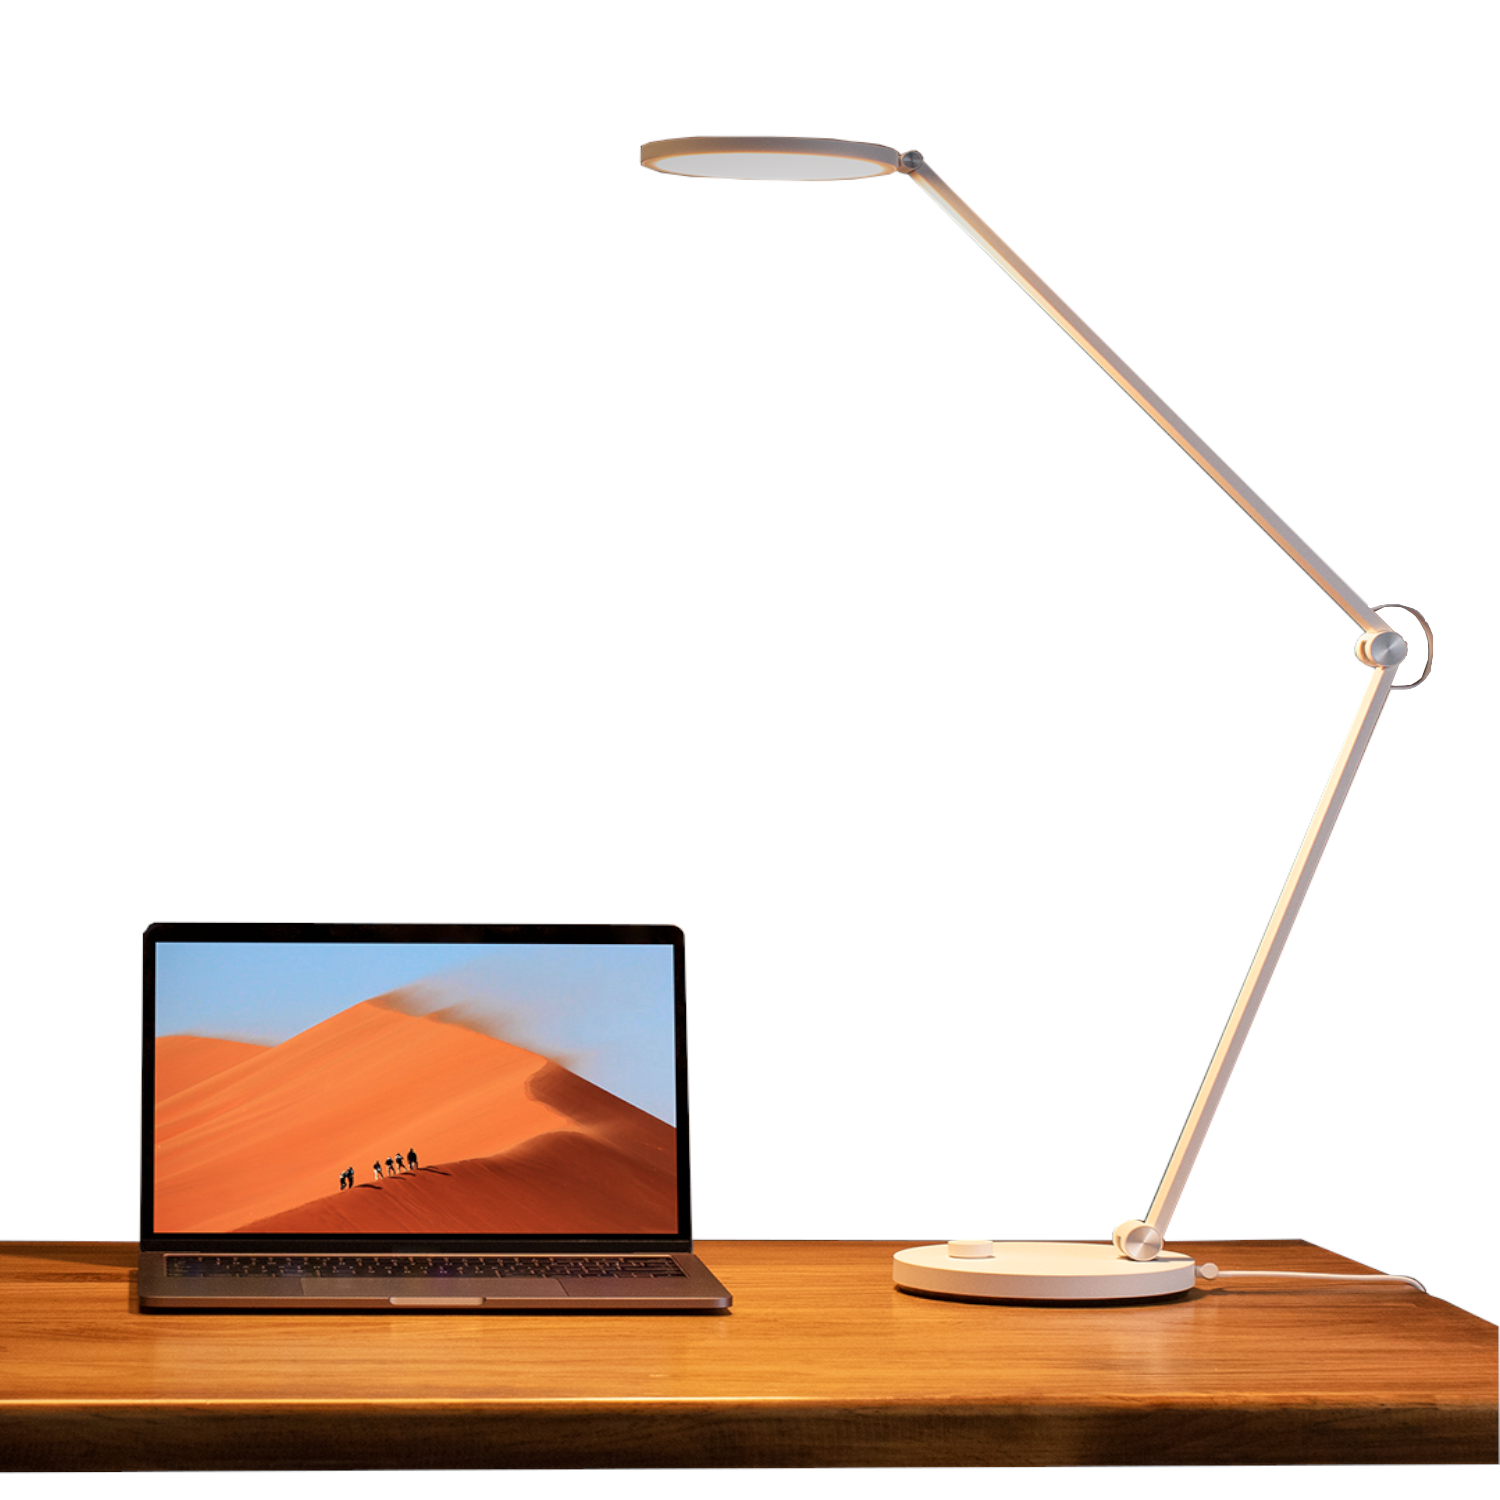 Xiaomi Mi LED Desk Lamp 1S/ 6W/ WiFi Lámpara Inteligente